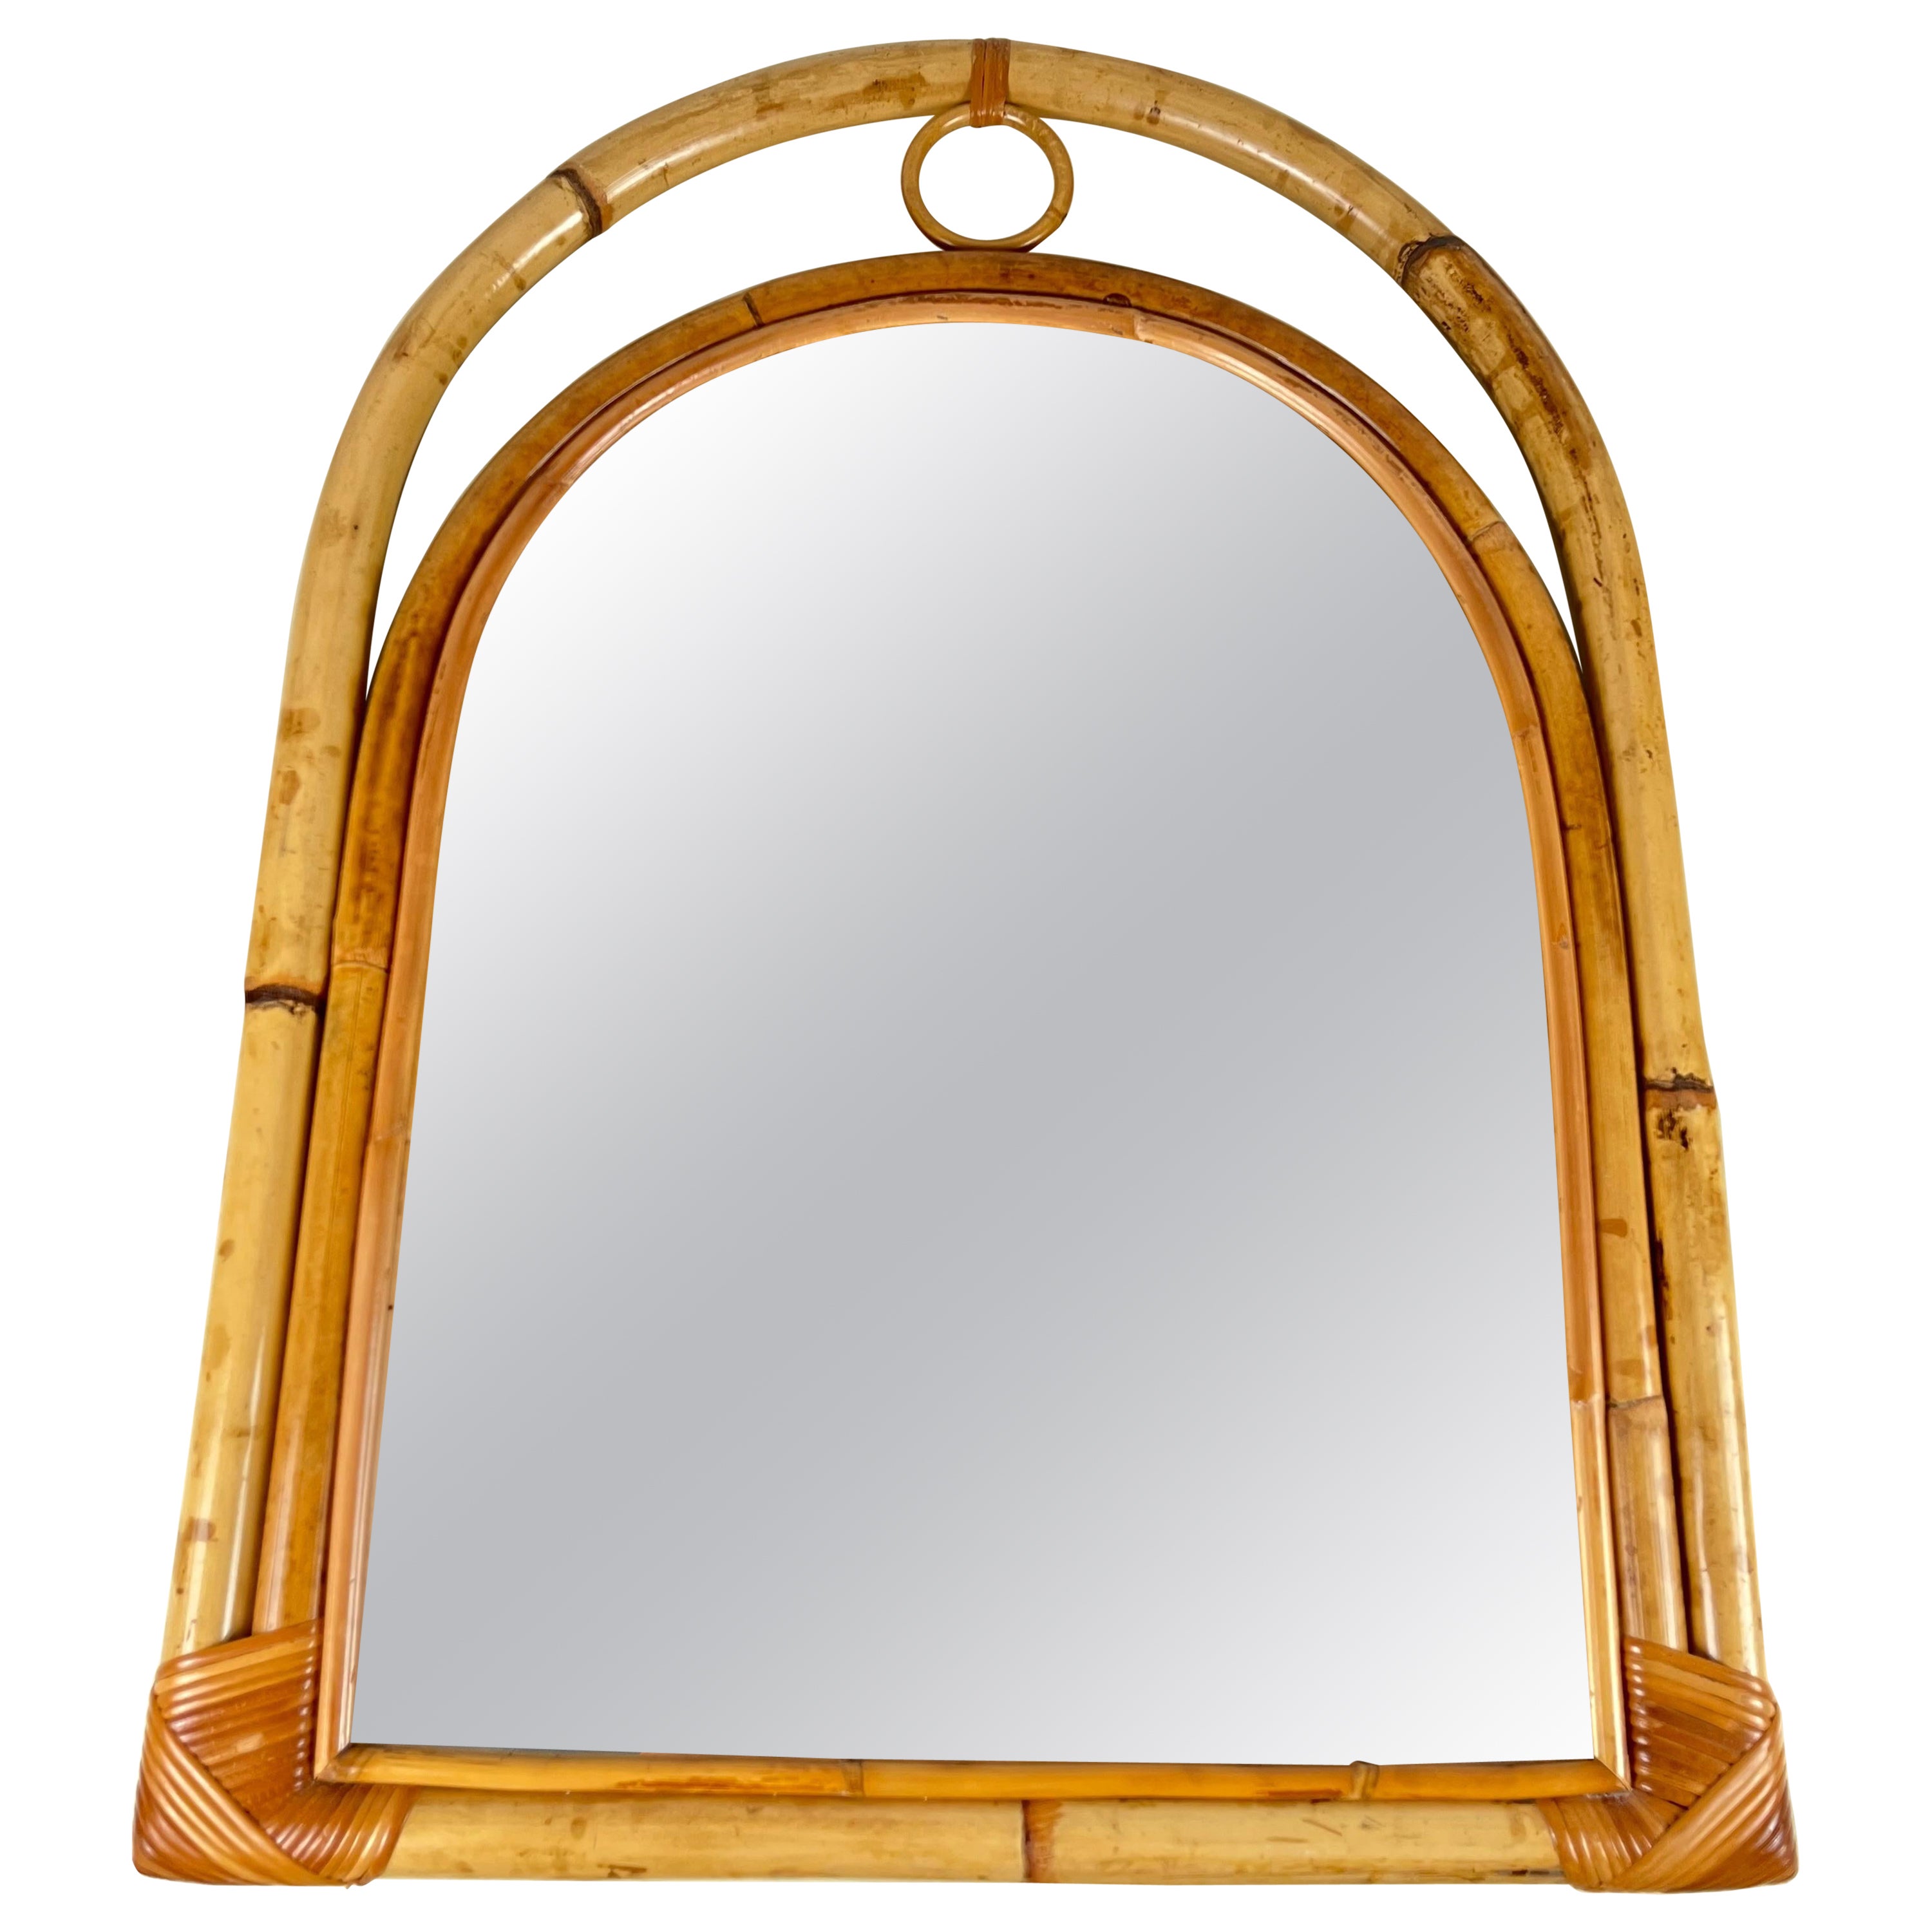 Bamboo Italian Arch Mirror Attributed To Vittorio Bonacina 1970s For Sale